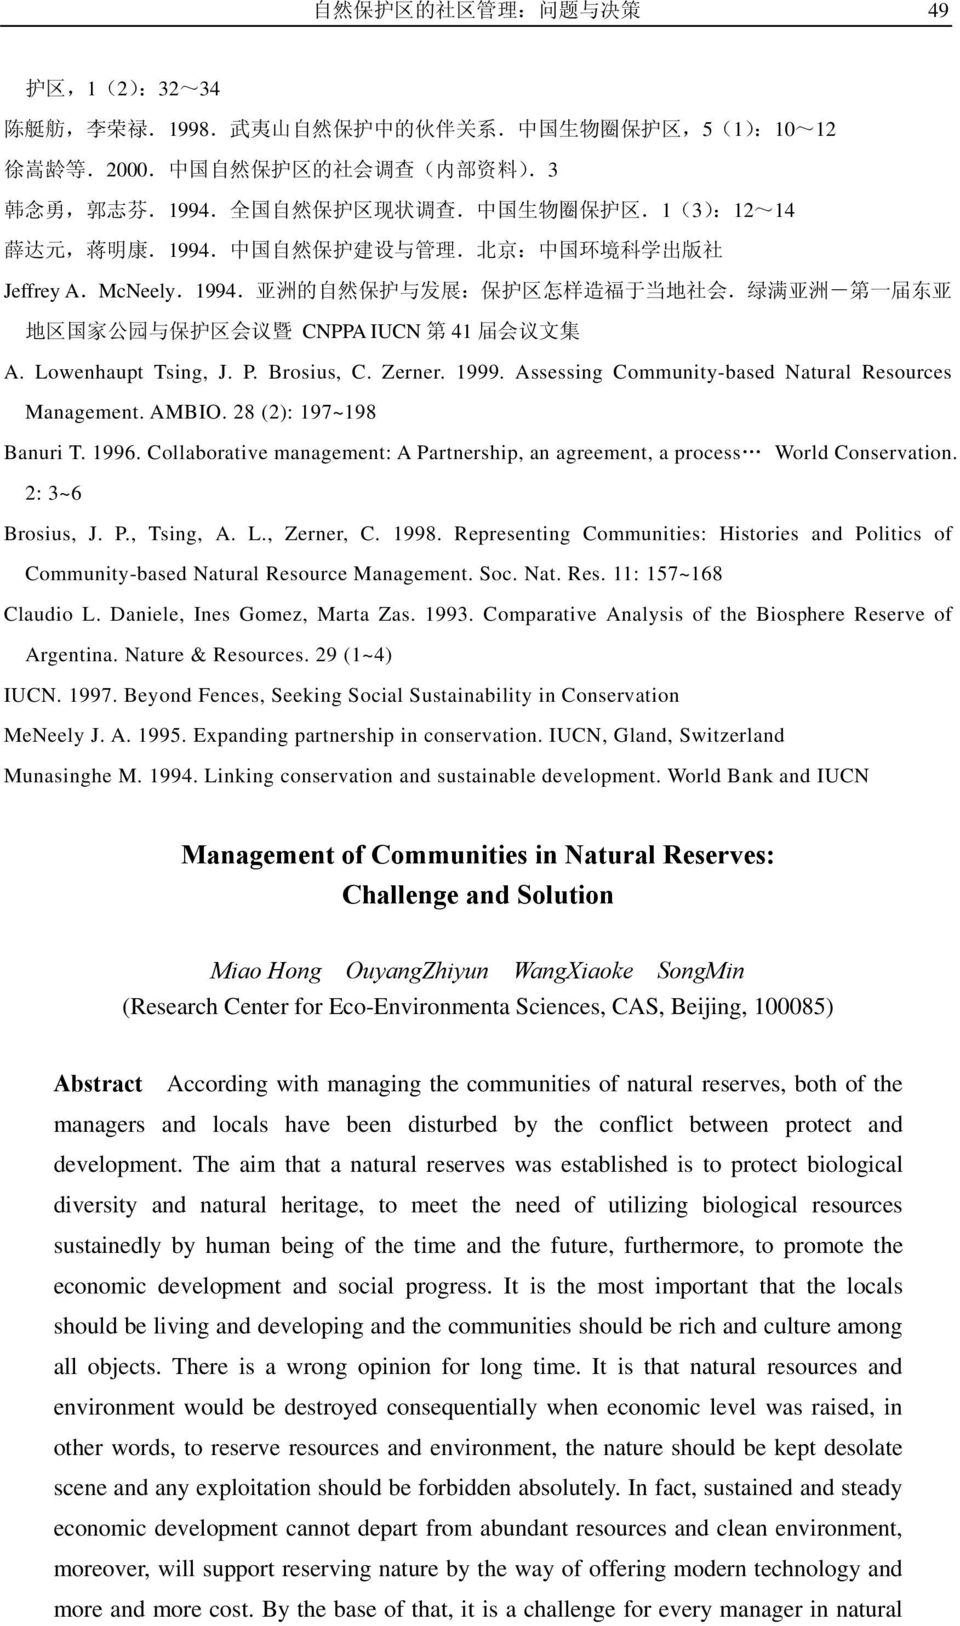 绿 满 亚 洲 - 第 一 届 东 亚 地 区 国 家 公 园 与 保 护 区 会 议 暨 CNPPA IUCN 第 41 届 会 议 文 集 A. Lowenhaupt Tsing, J. P. Brosius, C. Zerner. 1999. Assessing Community-based Natural Resources Management. AMBIO.